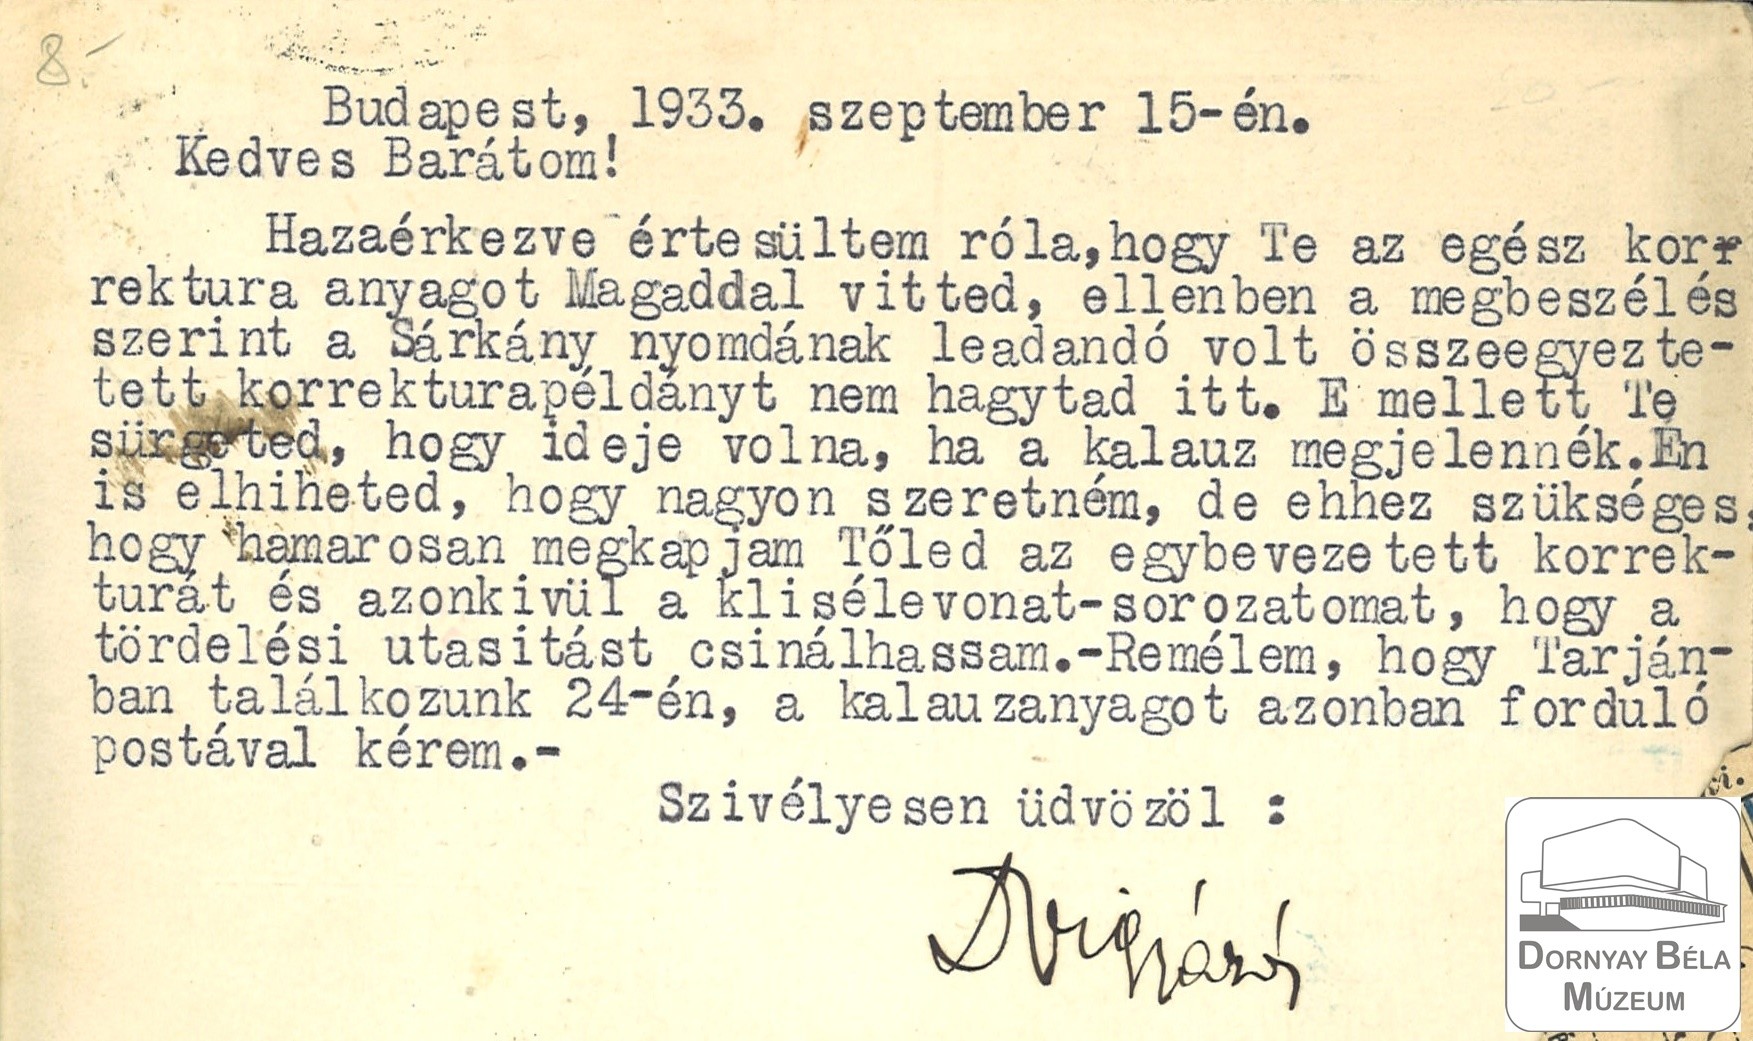 Dr. Dornyay Béla gimn. tanár úrnak írott levelezőlapok (Dornyay Béla Múzeum, Salgótarján CC BY-NC-SA)